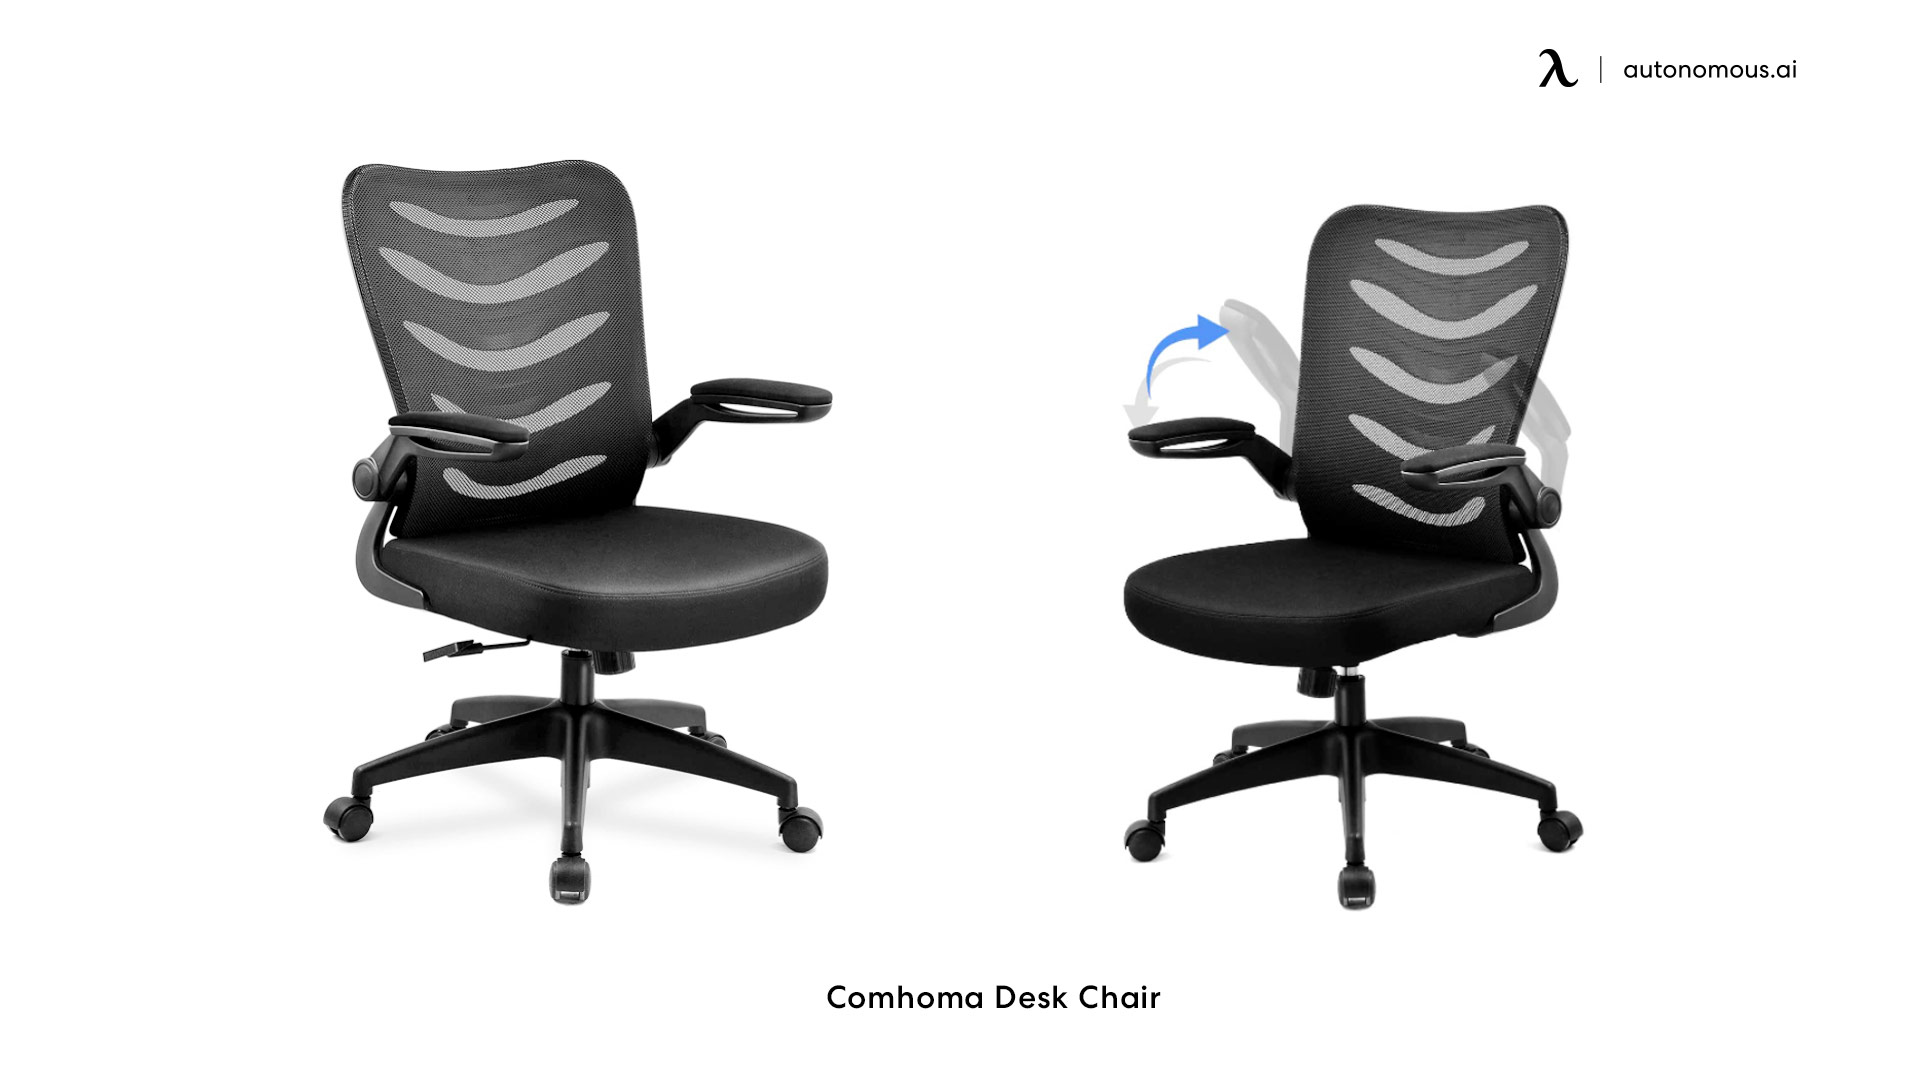 Comhoma Desk Chair